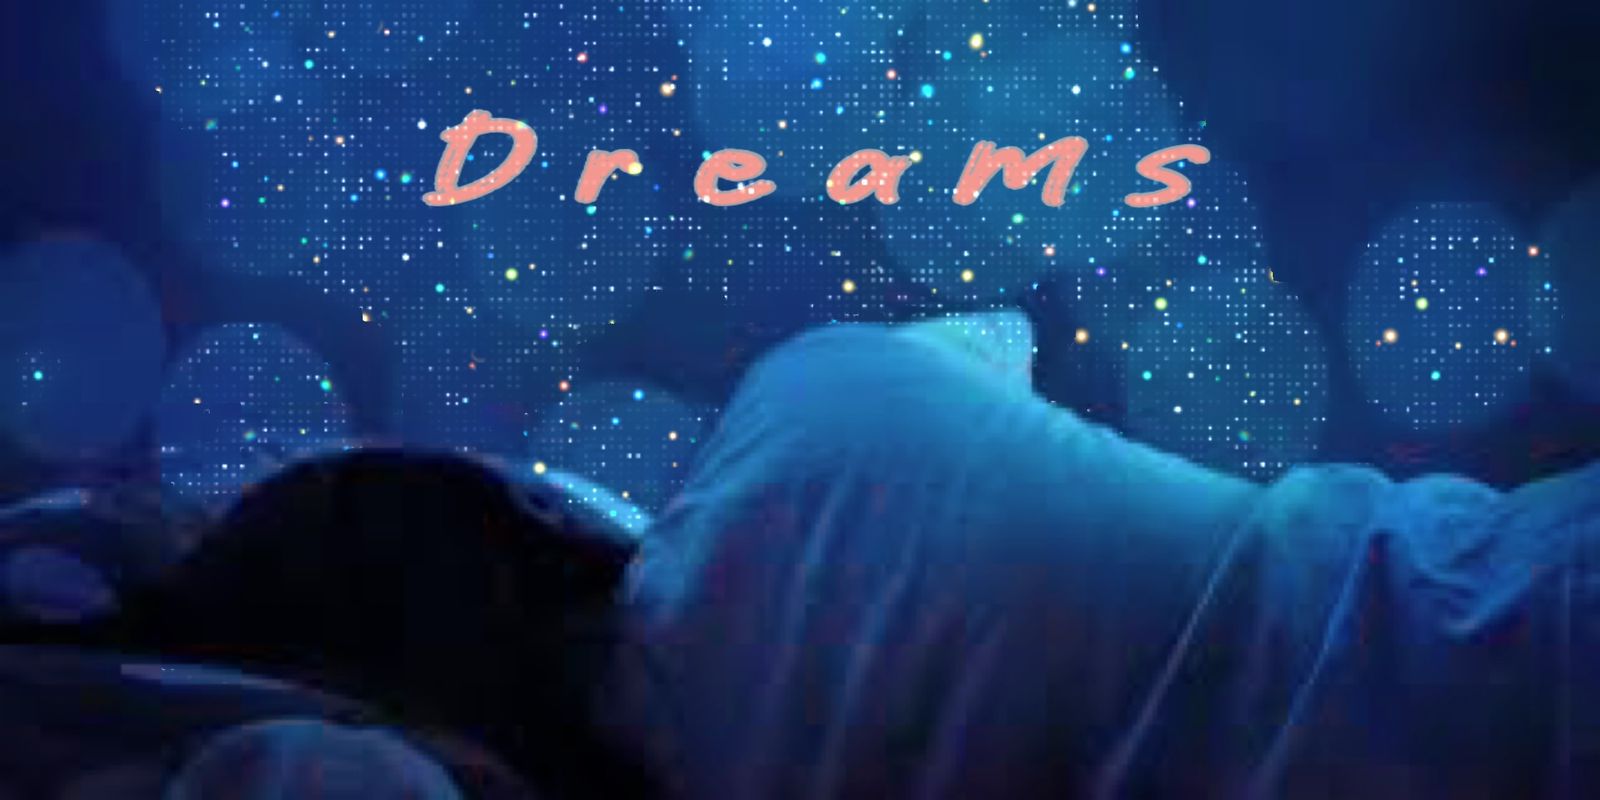 सपने में इन 6 चीजों का दिखना होता है अशुभ, जानें क्या कहती है Dream Astrology